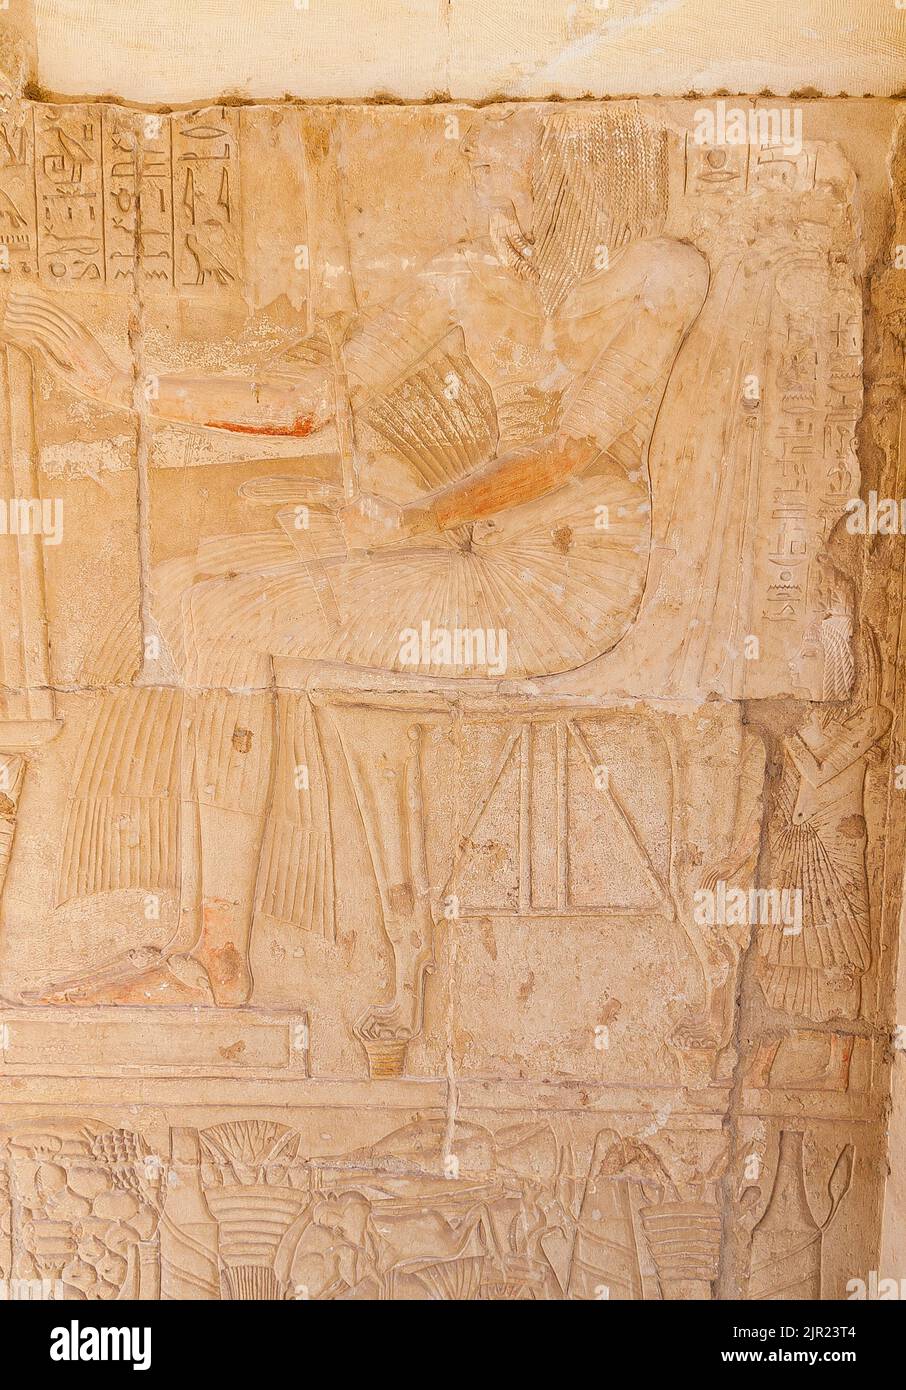 Égypte, Saqqara, tombeau de Horemheb, salle de statue, prêtre Iunmutef censurant Horemheb. Banque D'Images